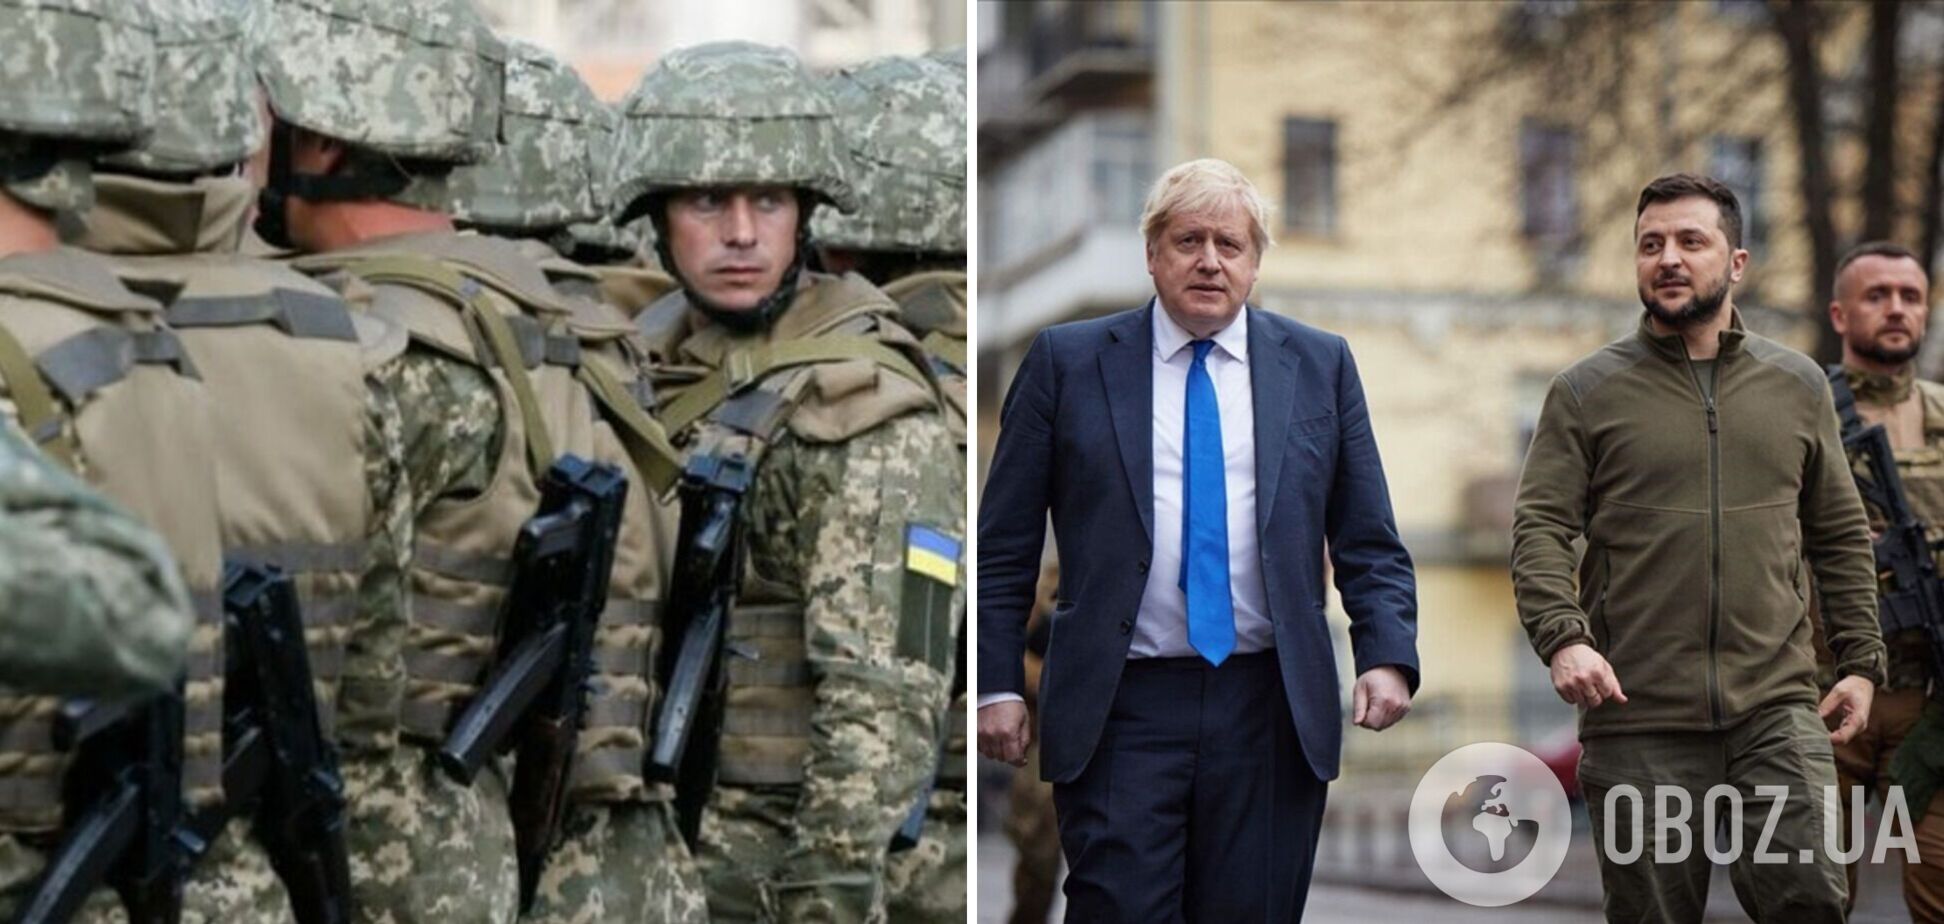 Украина уже не просит у Европы закрыть небо, а призывает дать технику, тяжелую артиллерию, средства ПВО, – Подоляк